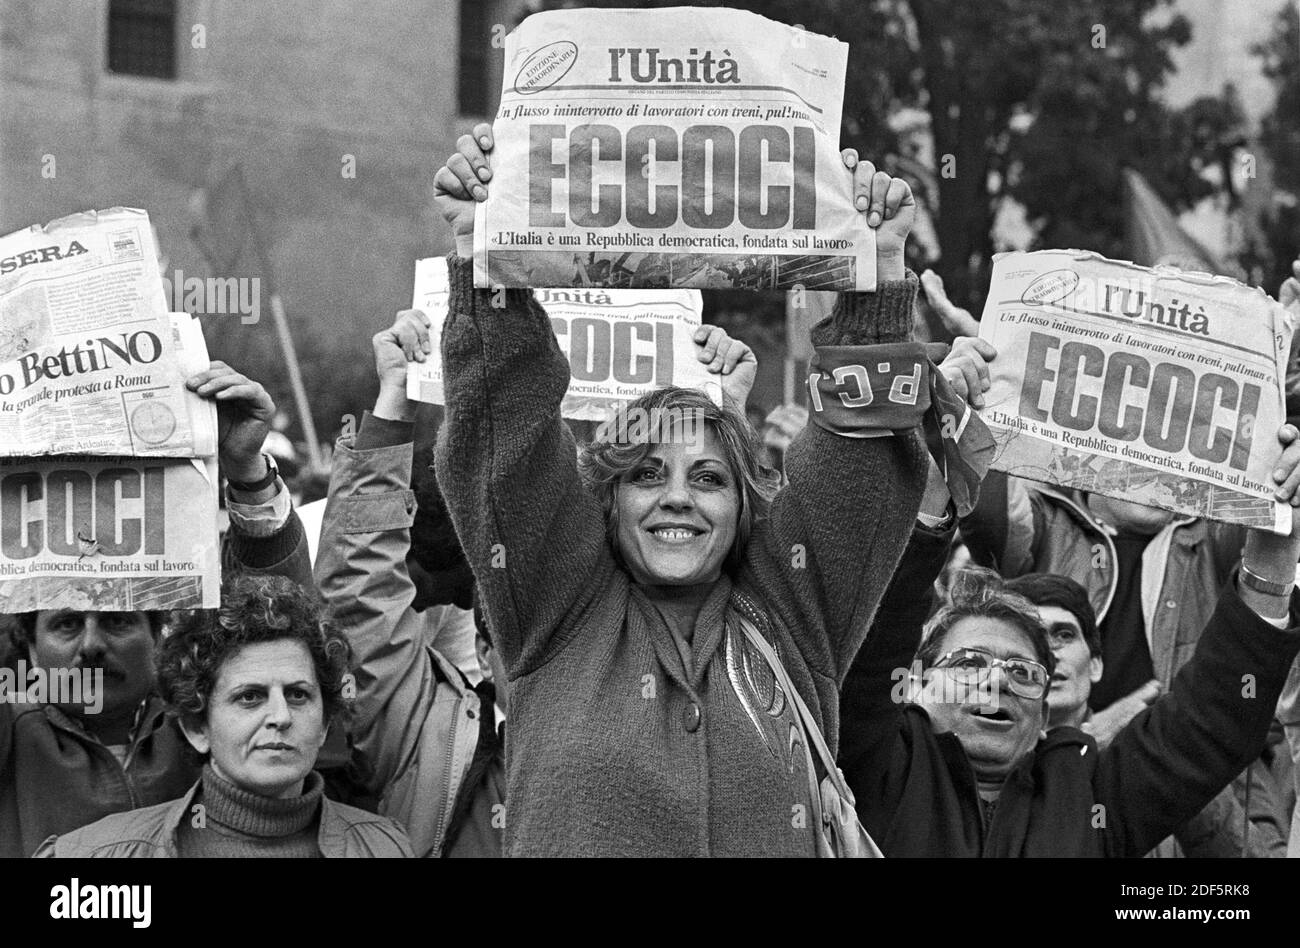 - manifestazione del PCI, Partita Comunista Italiano, contro il governo di Bettino Craxi (marzo 1984)..- manifestazione del PCI, Partito Comunista Italiano, contro il governo di Bettino Craxi (marzo 1984) Foto Stock